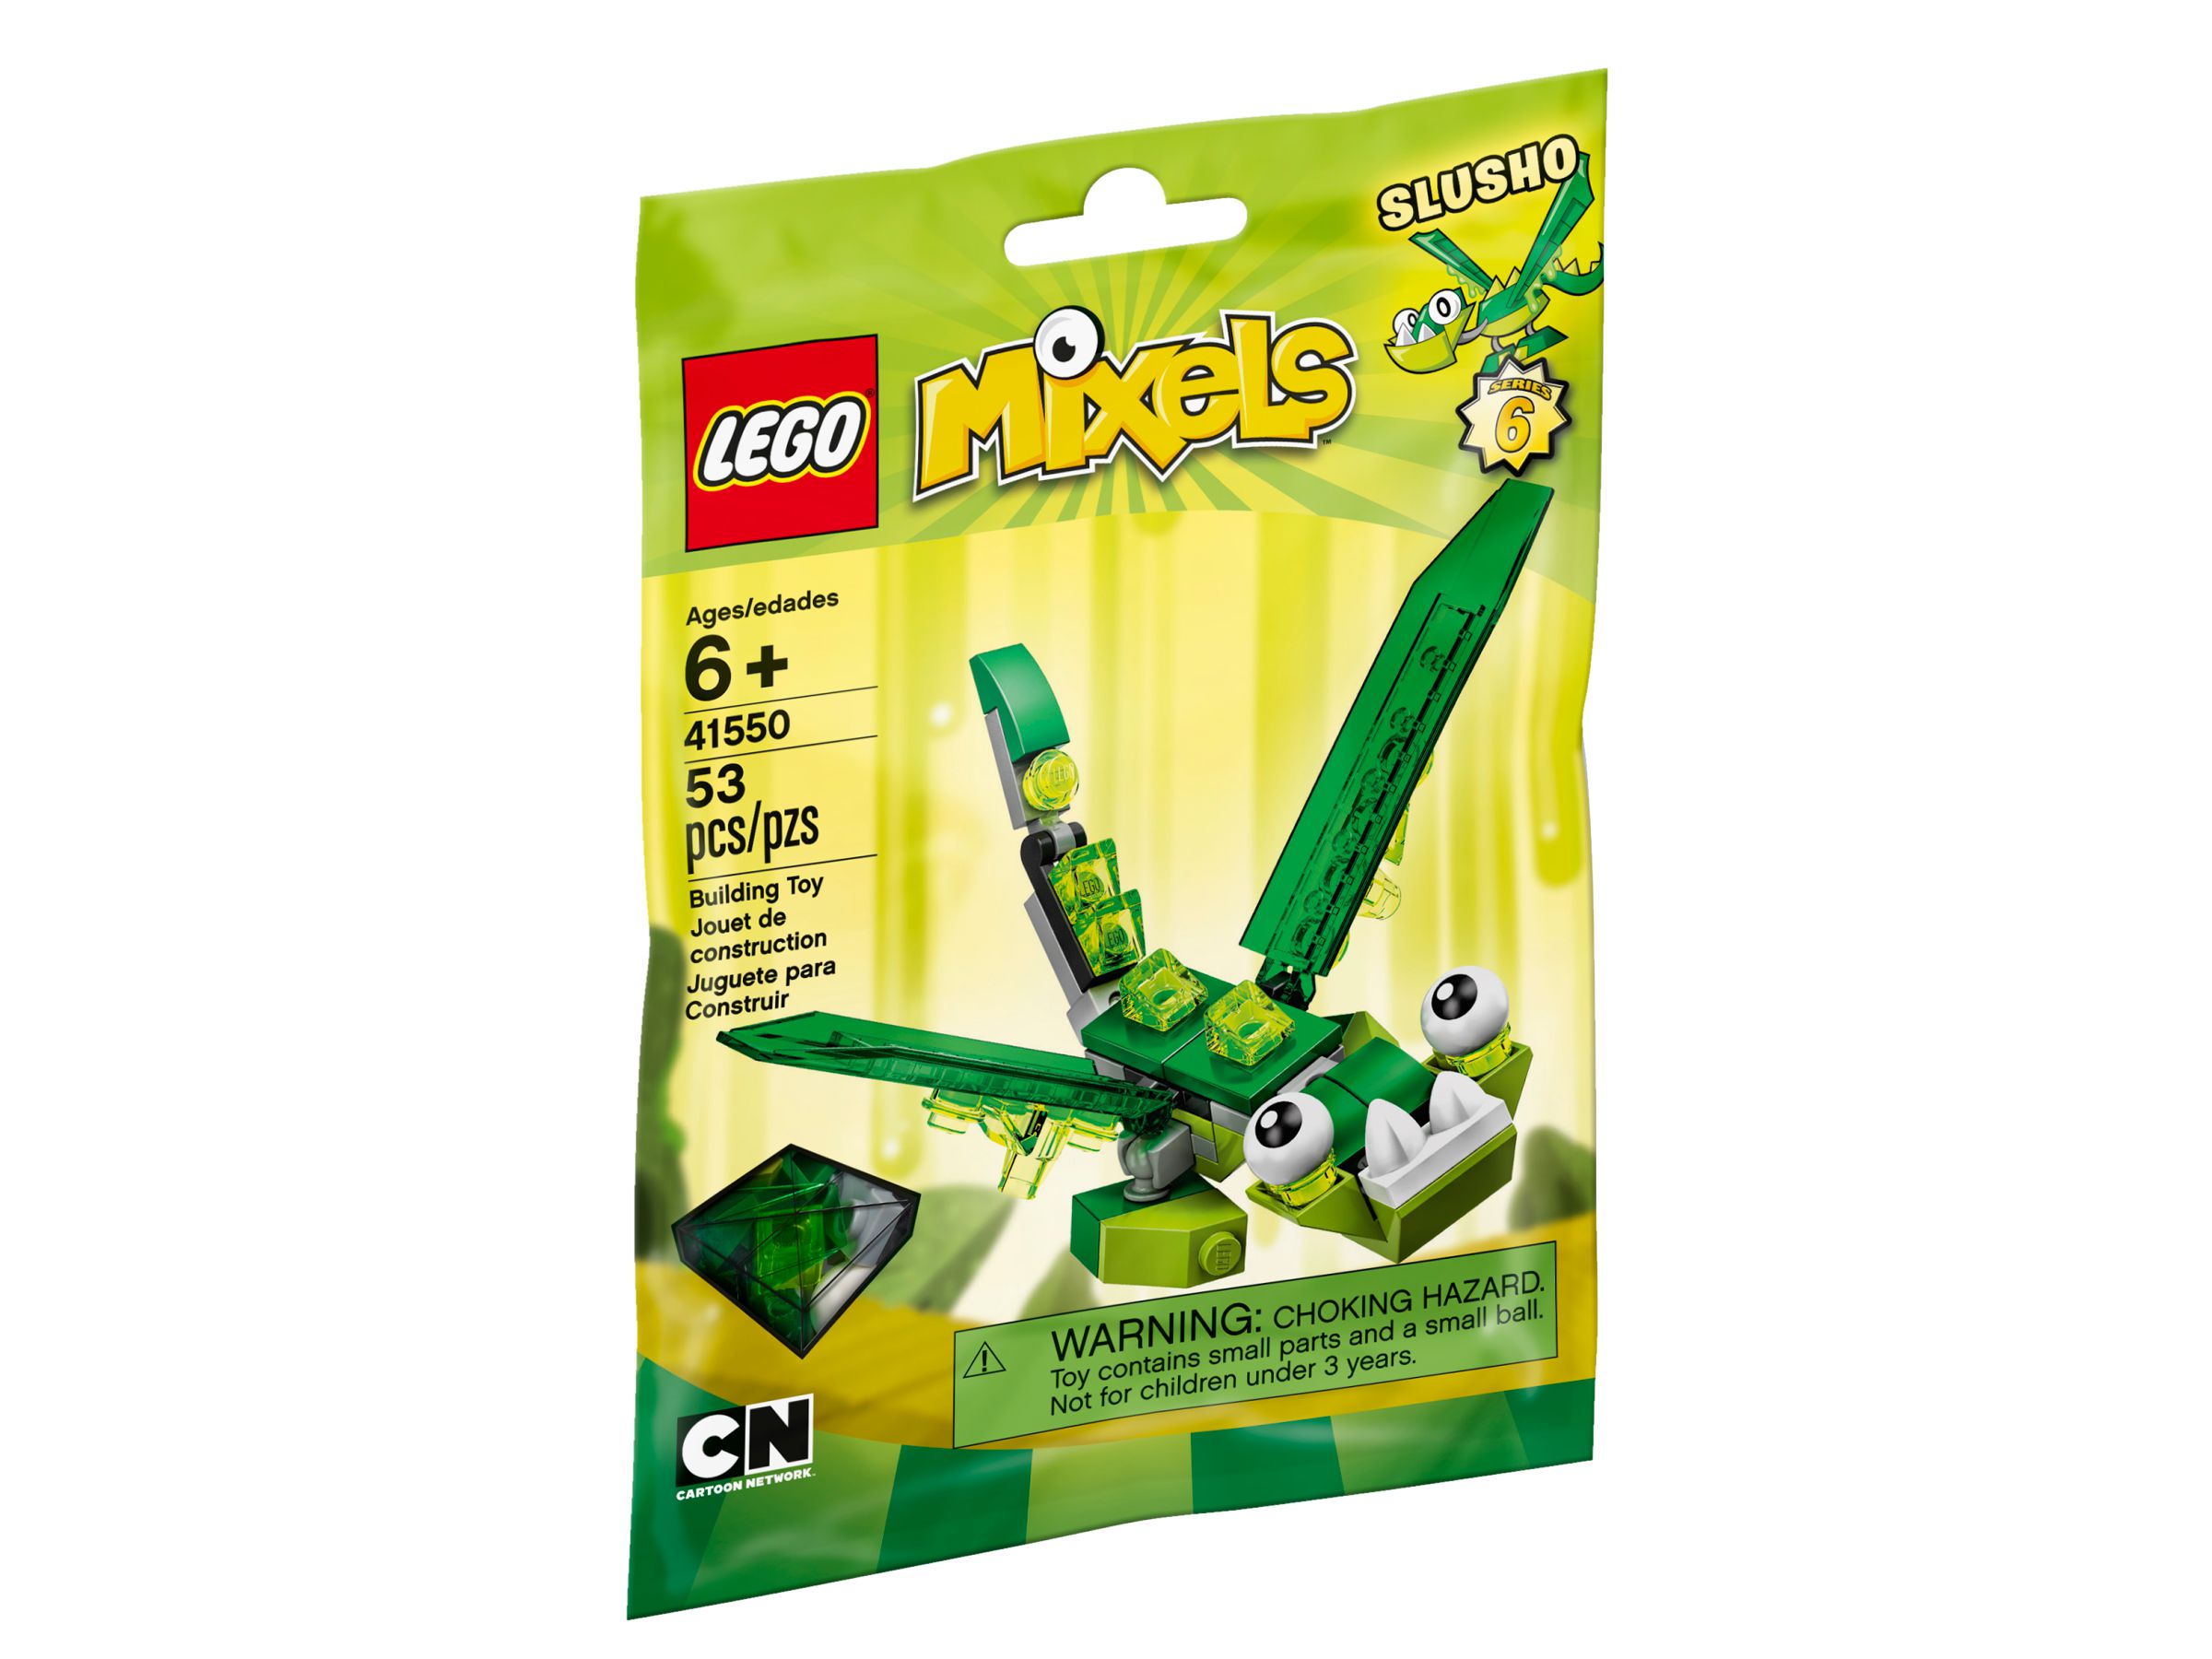 LEGO Mixels 41550 Slusho LEGO_41550_alt1.jpg